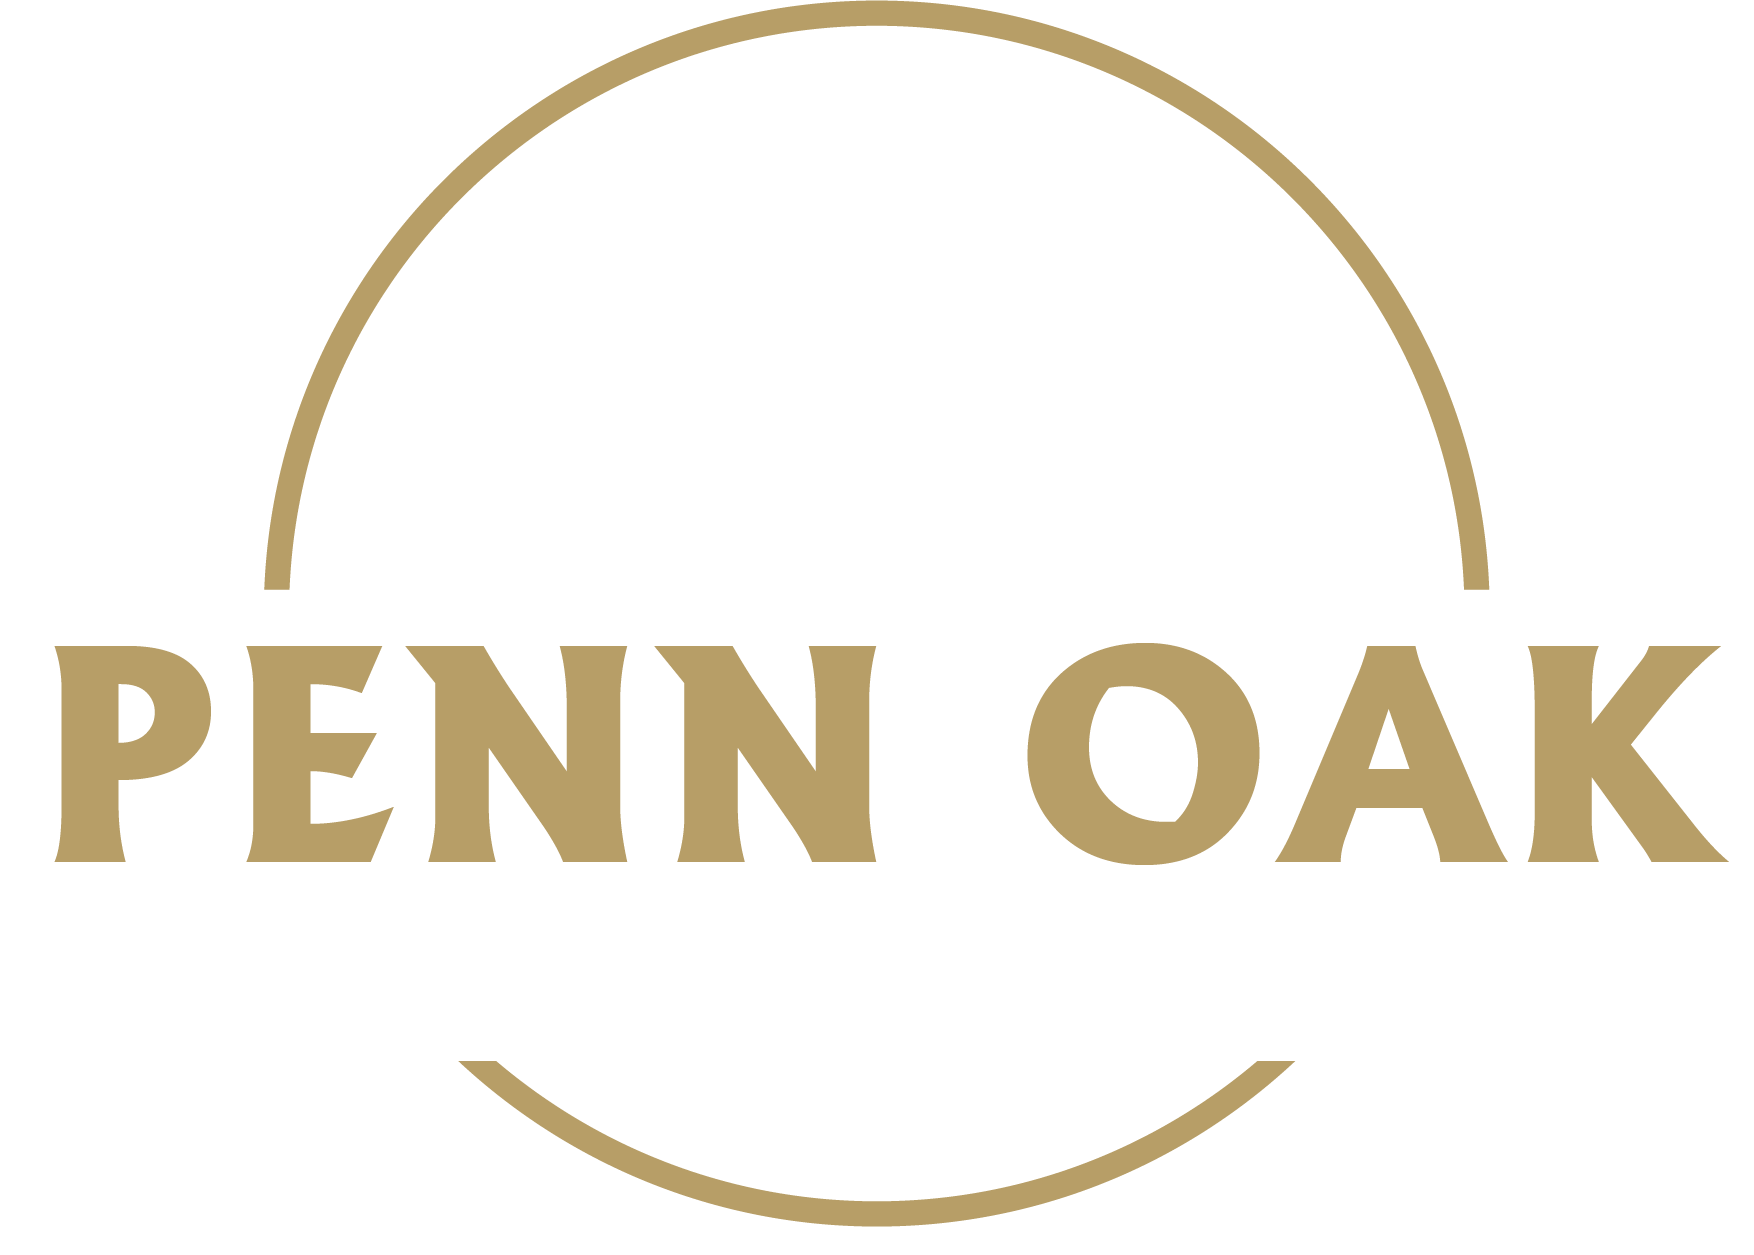 Penn Oak Mortgage